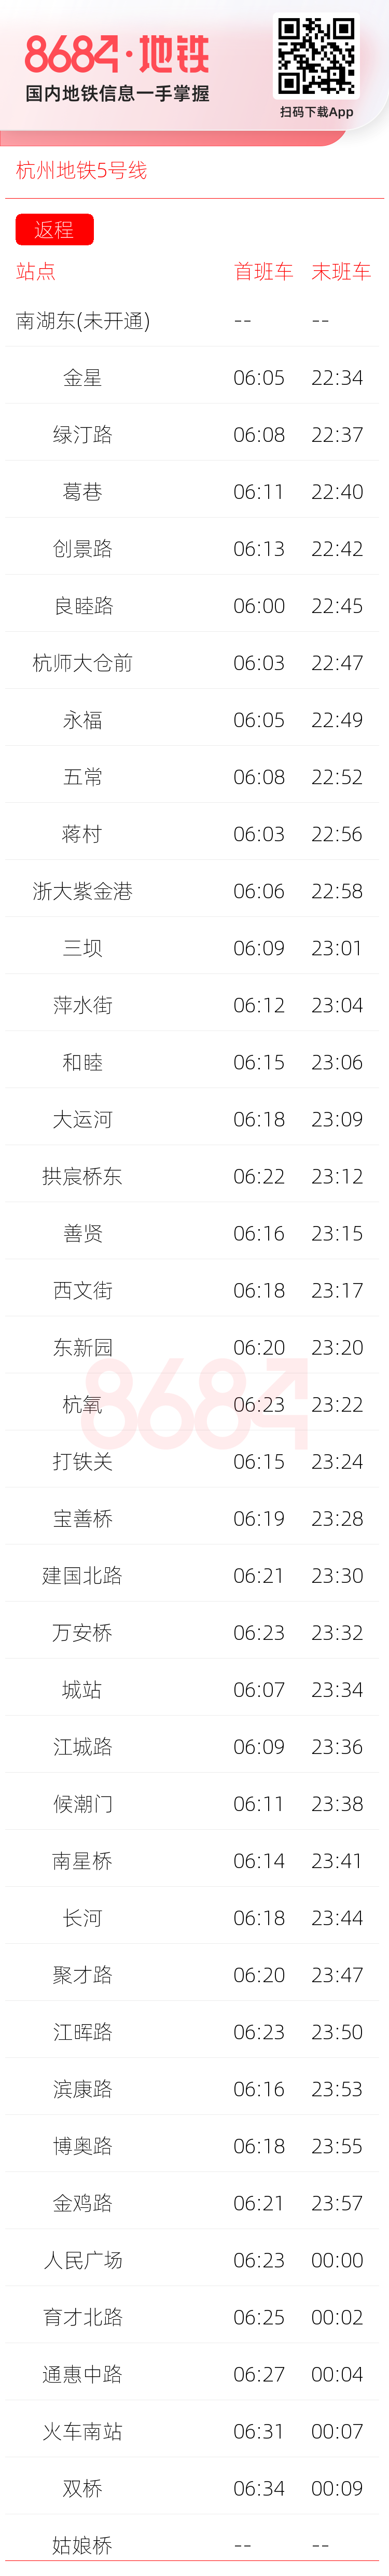 杭州地铁5号线运营时间表